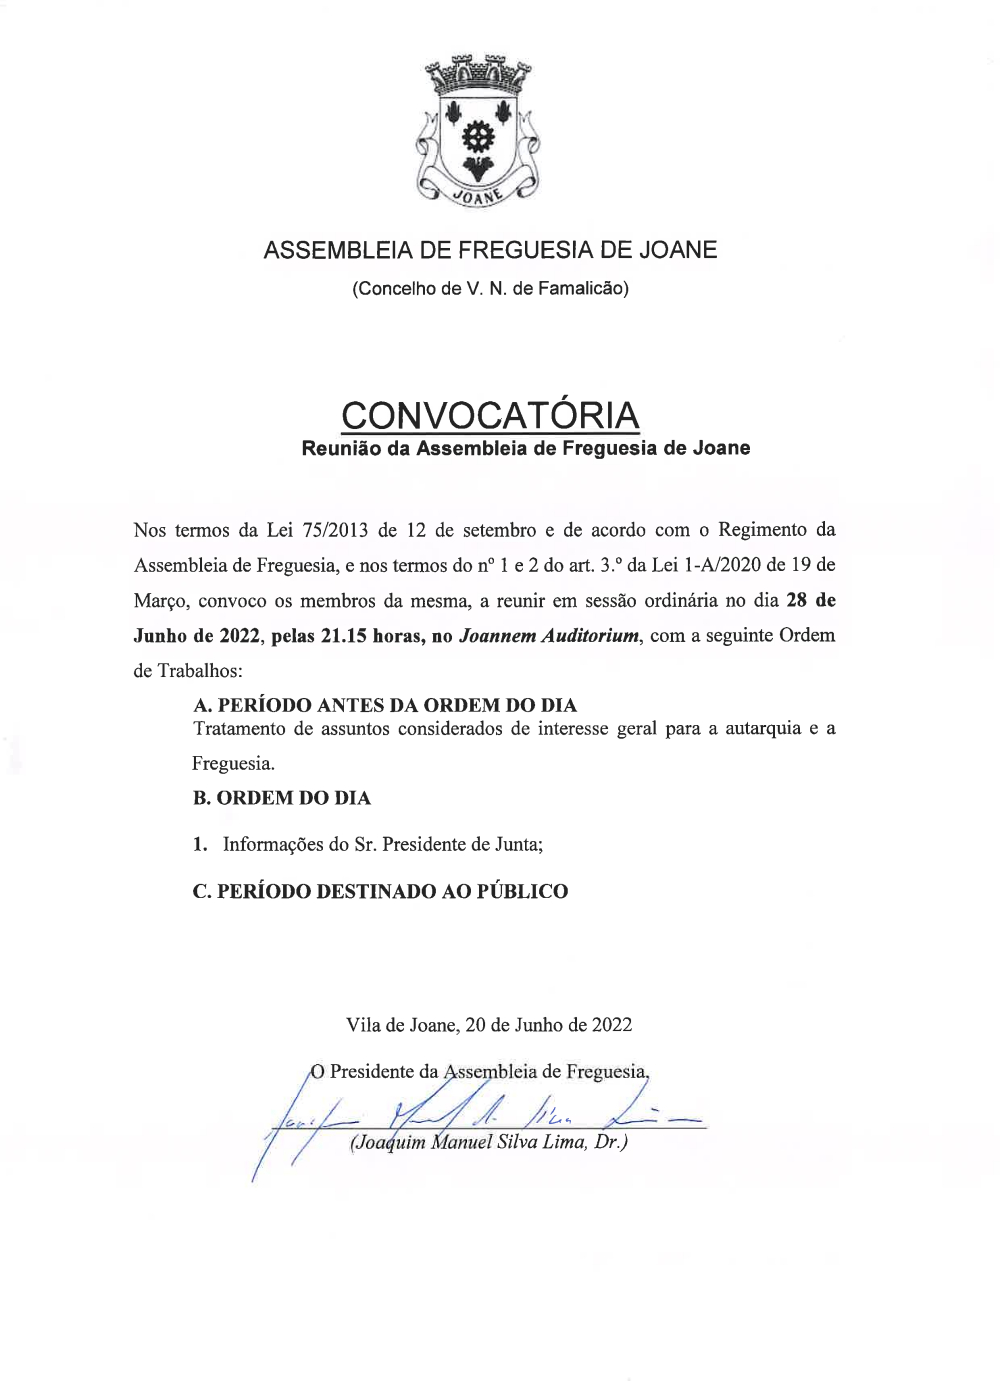 Convocatória da Assembleia de Freguesia - Junho 2022